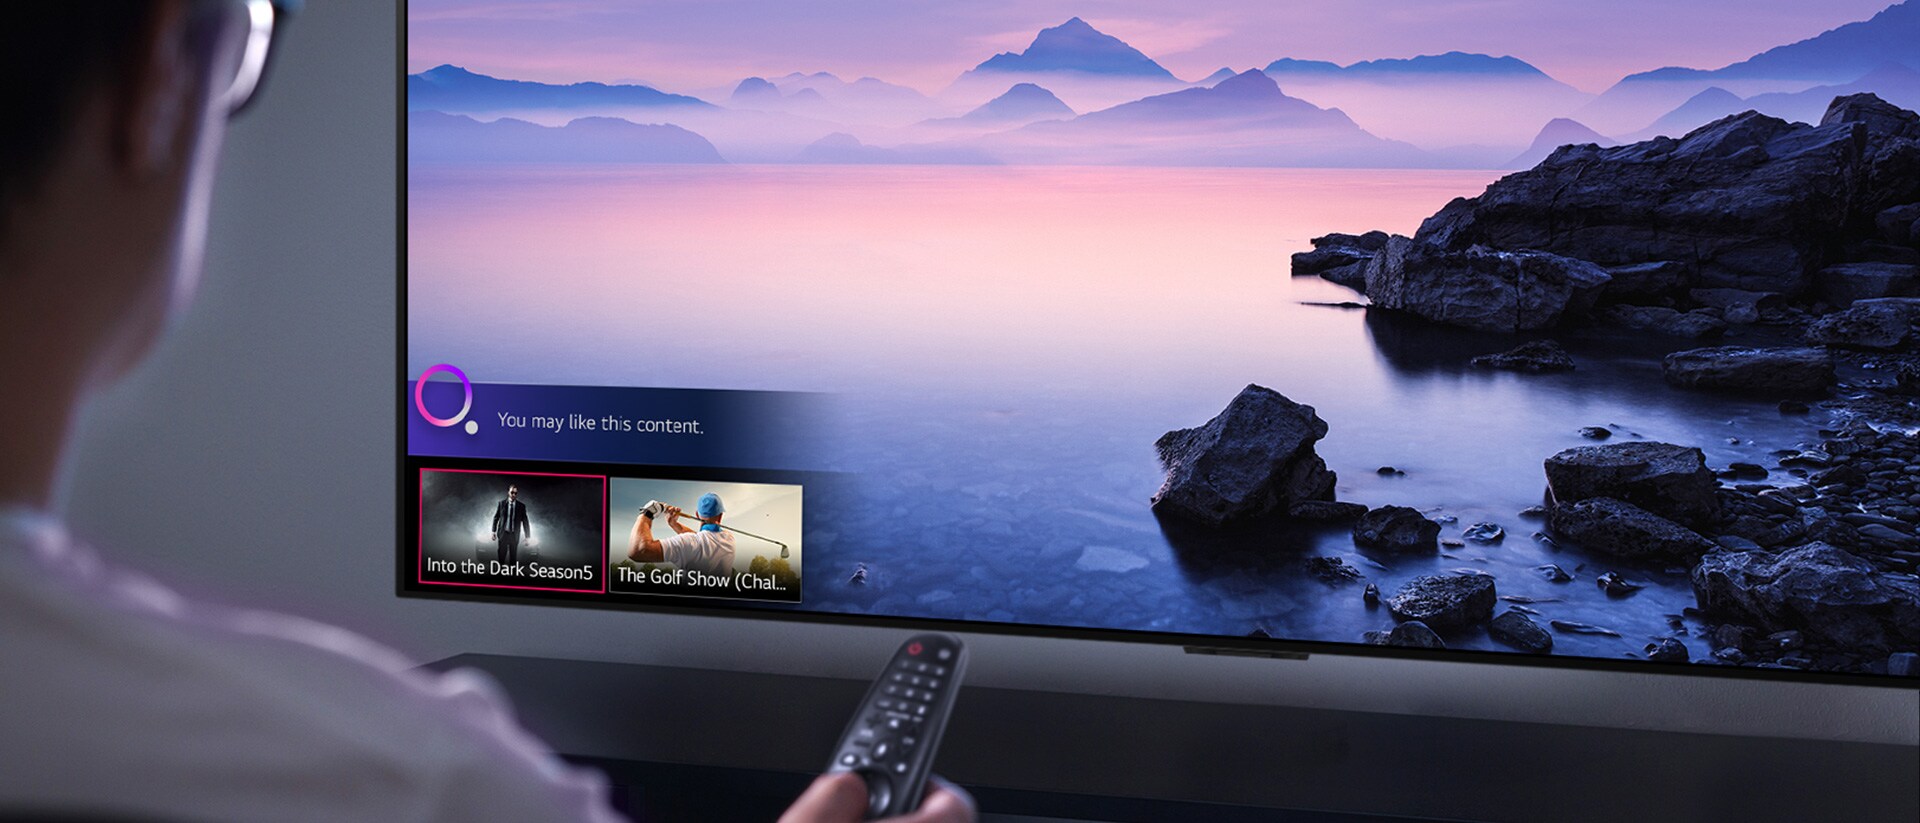 Prikaz izbliza muškarca koji bira što želi gledati na televizoru pomoću daljinskog upravljača, uz televizor na kojem je prikazan krajolik